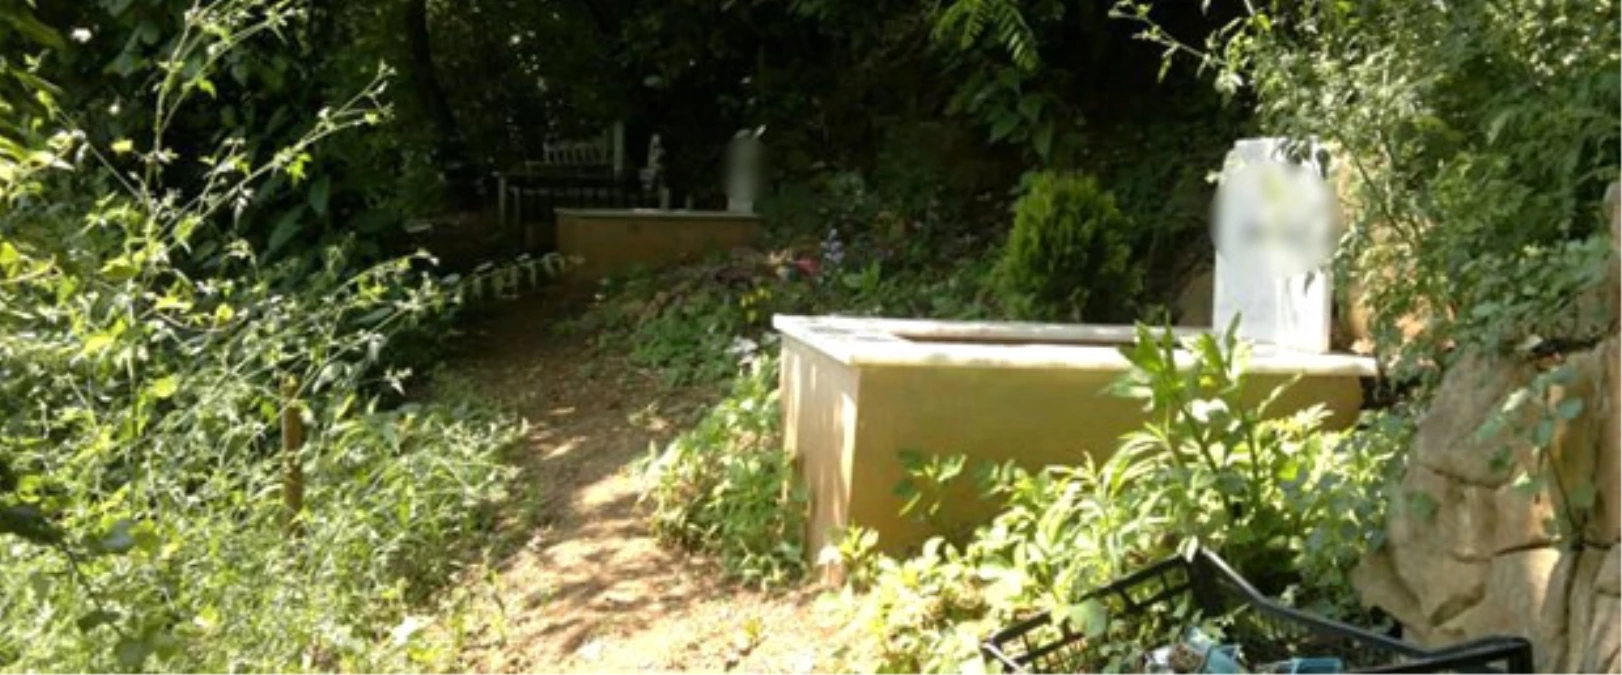 Ölen Kedilerini Aile Mezarlığına Gömdüler